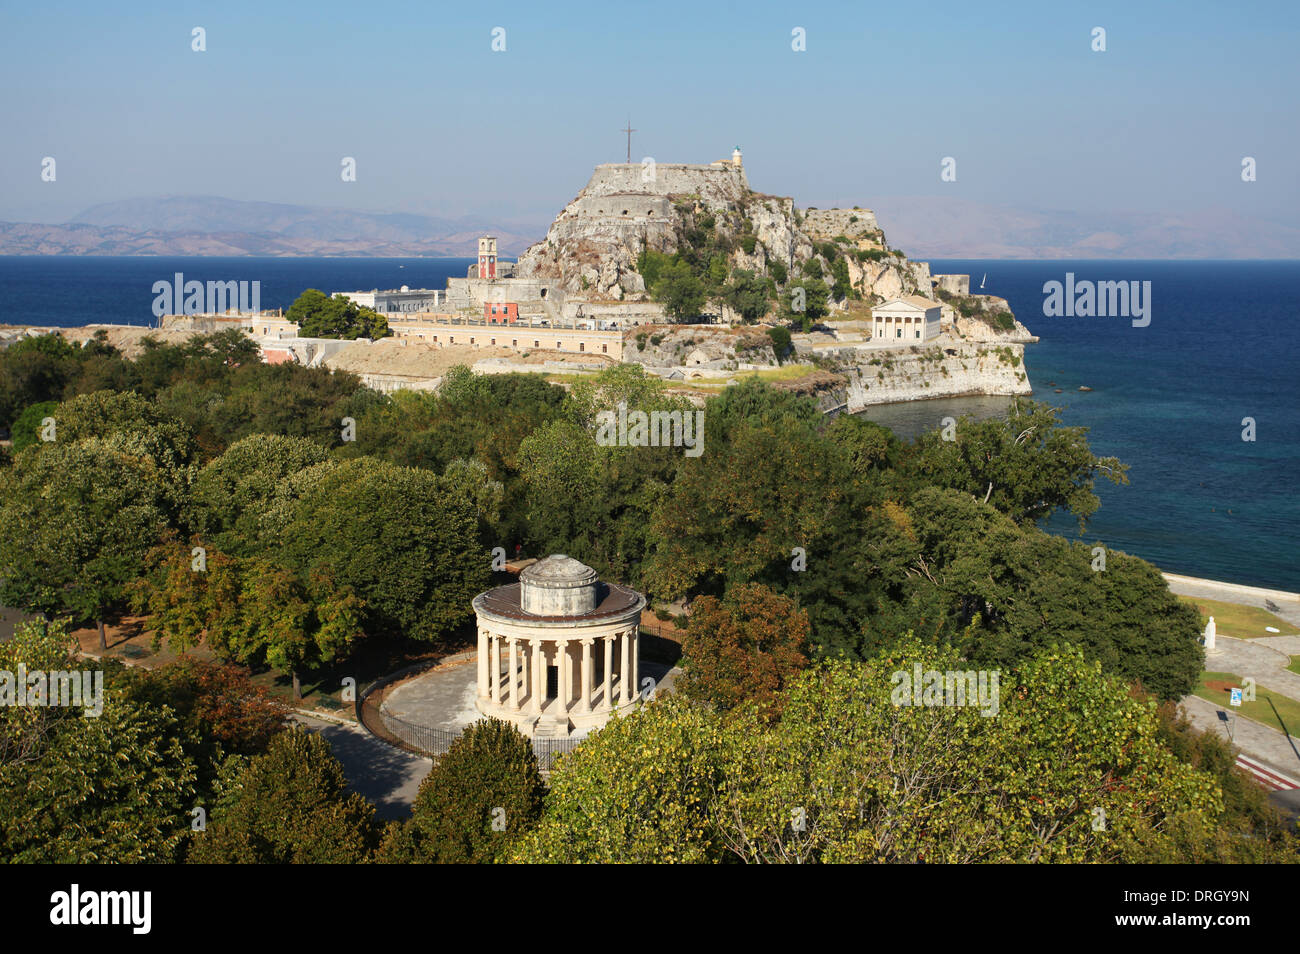 The Greek island of Corfu Stock Photo